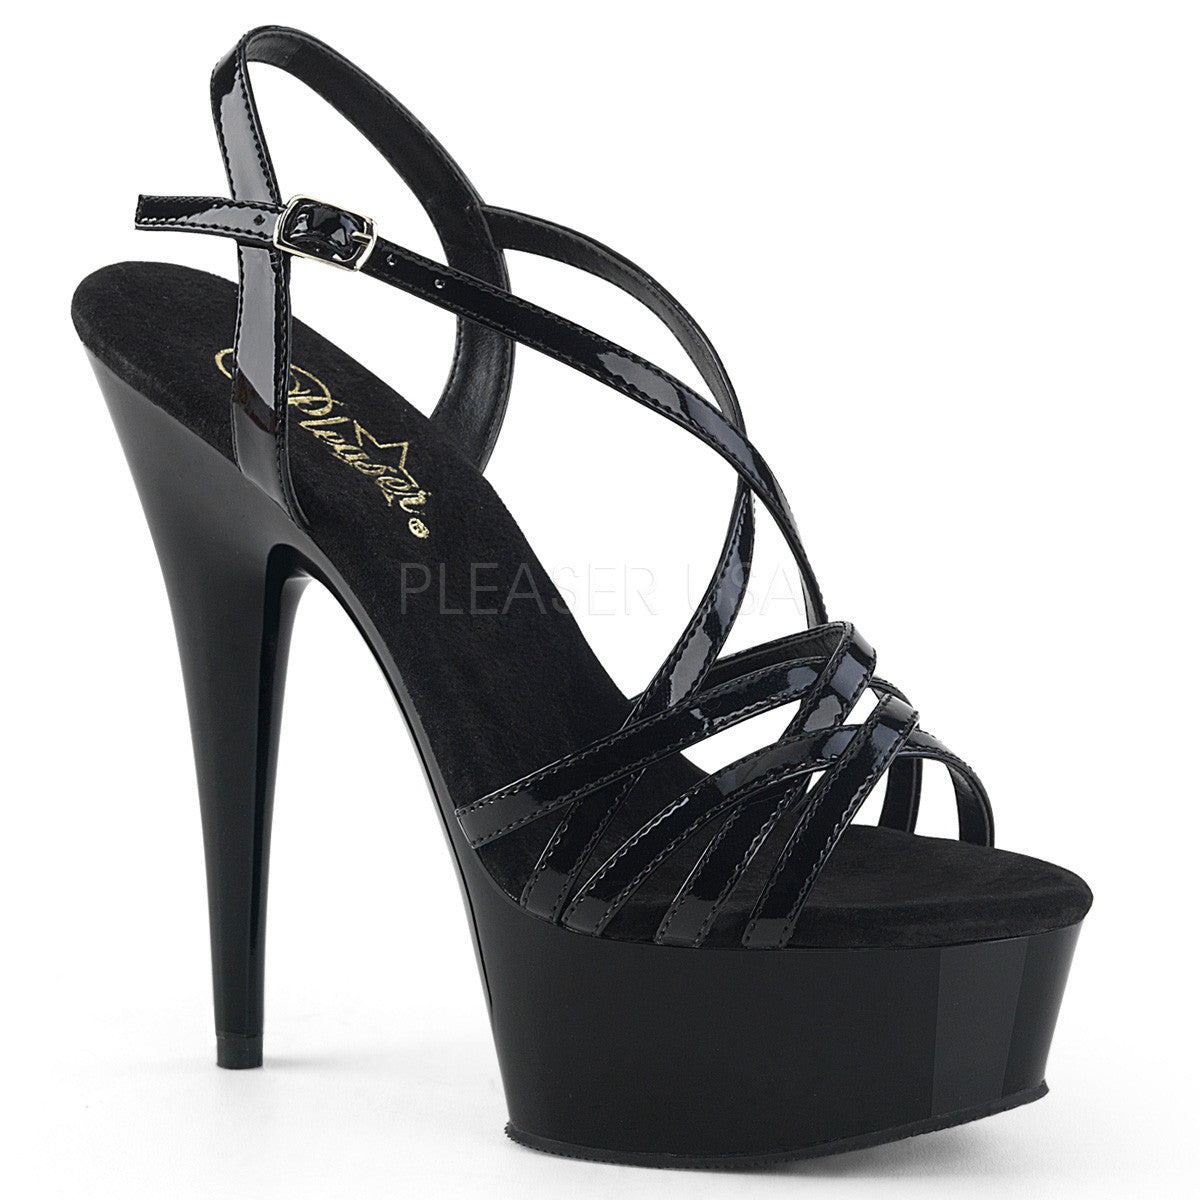 6" Heel DELIGHT-613 Black Pat Exotic Dancing Shoes